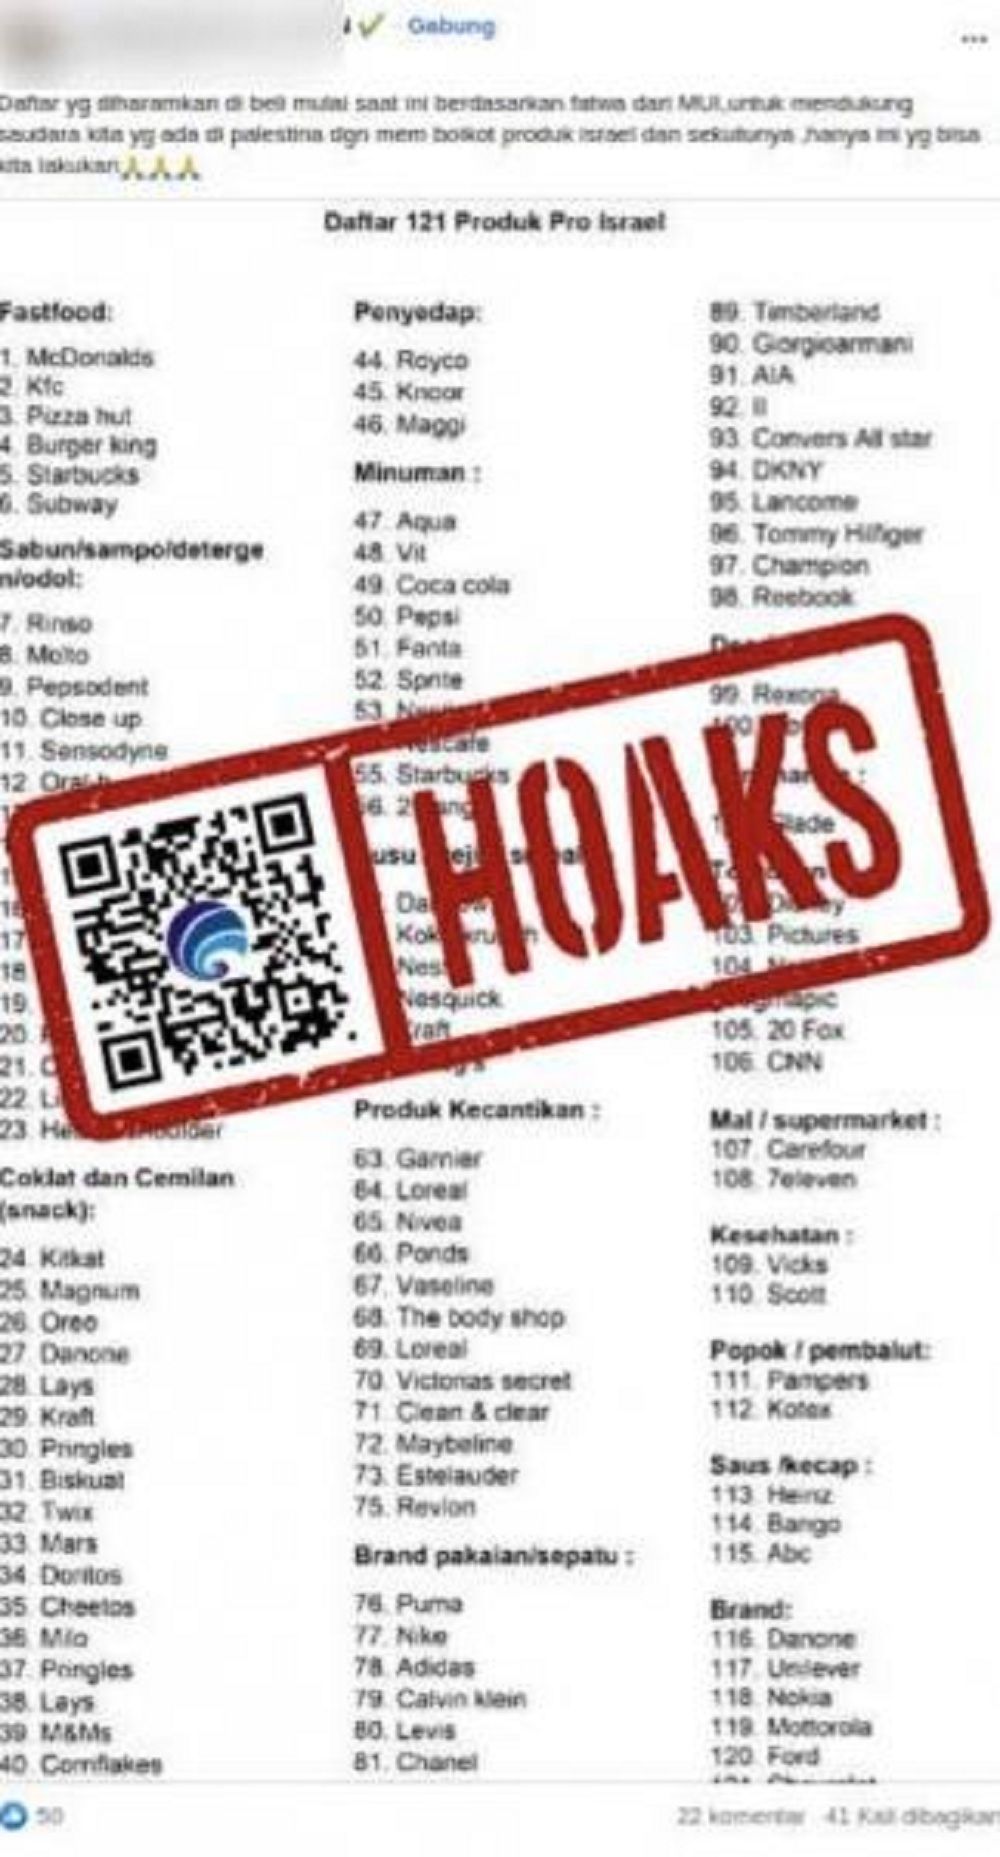 Hoaks Daftar 121 Produk Pro Israel/ Kominfo